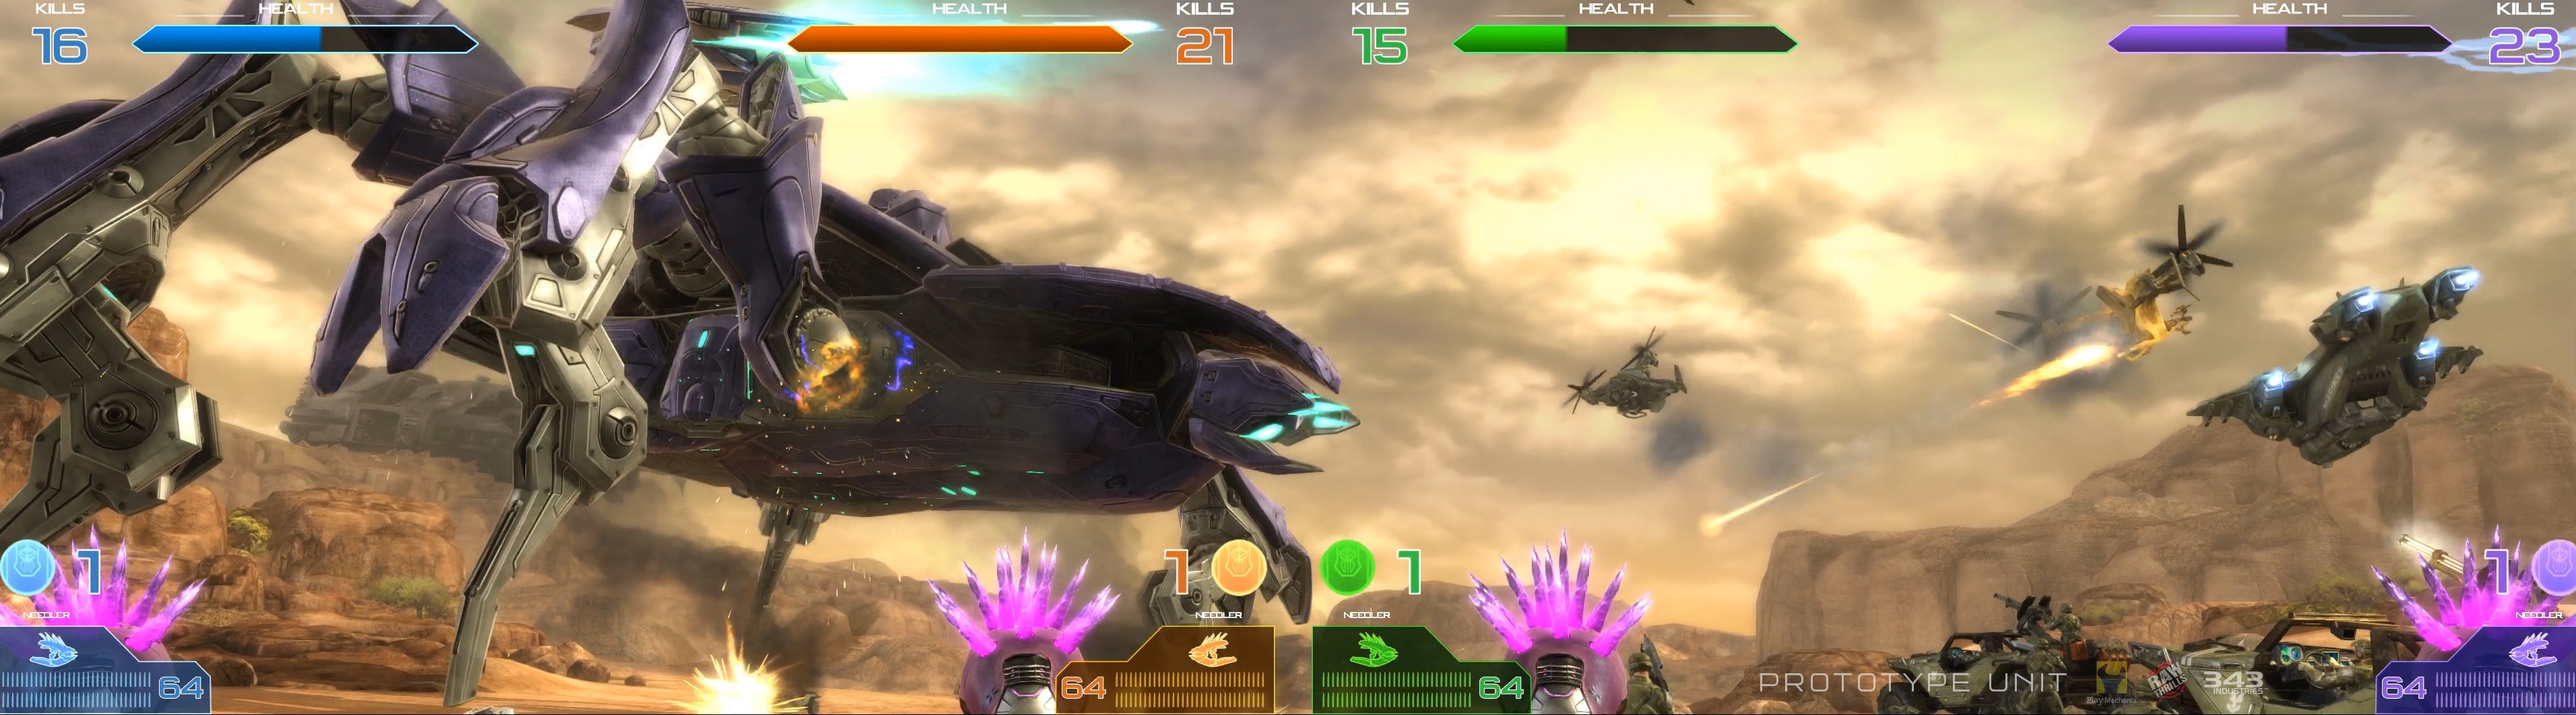 日本直営Halo: Fireteam Raven アーケード用 アンプ 筐体、コントロールパネル